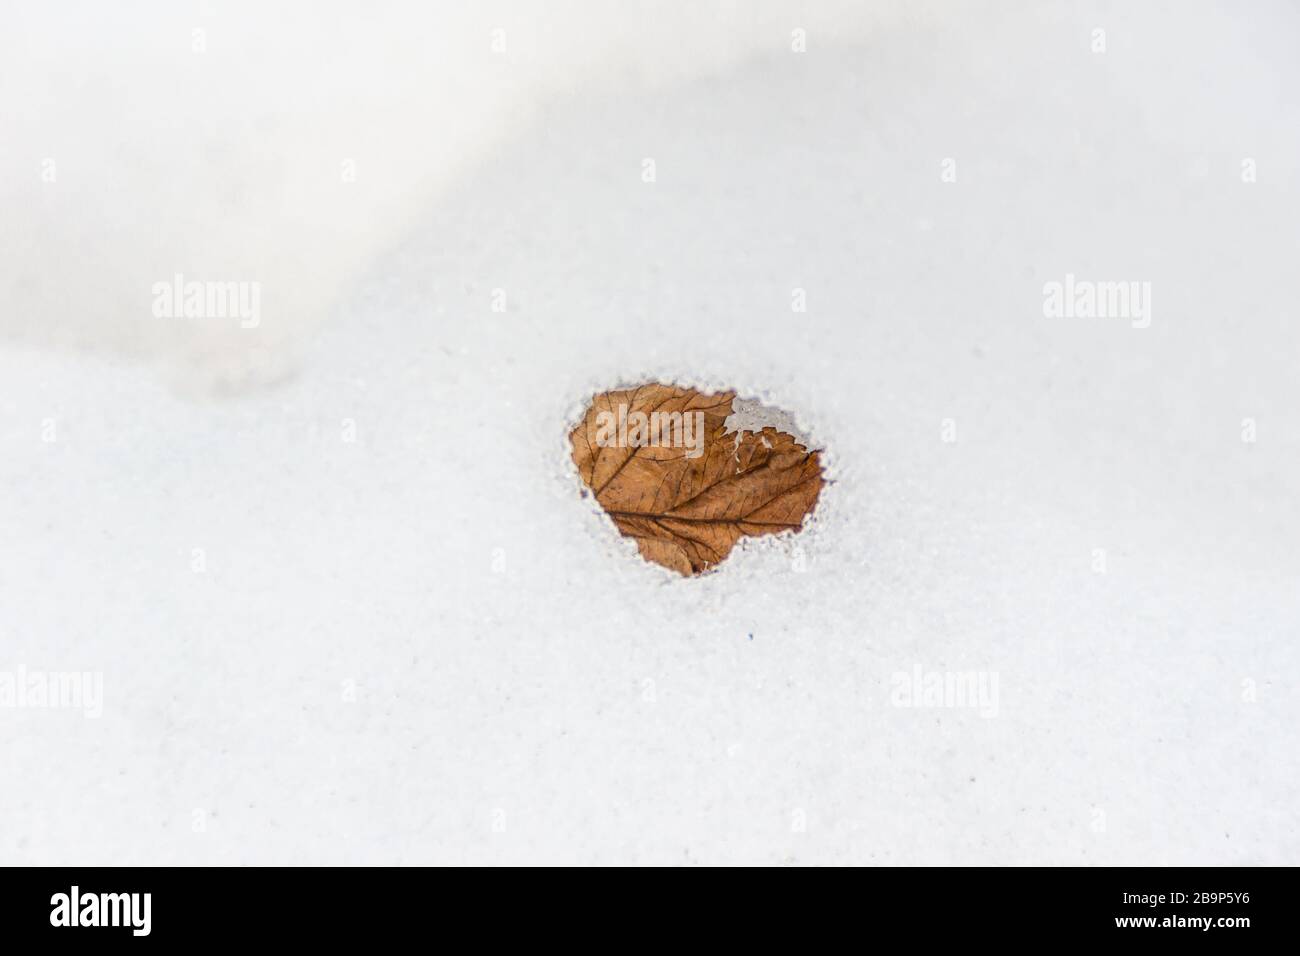 feuille sèche à l'intérieur d'une neige chauffée dans les rayons du soleil de printemps et de la neige fondue Banque D'Images